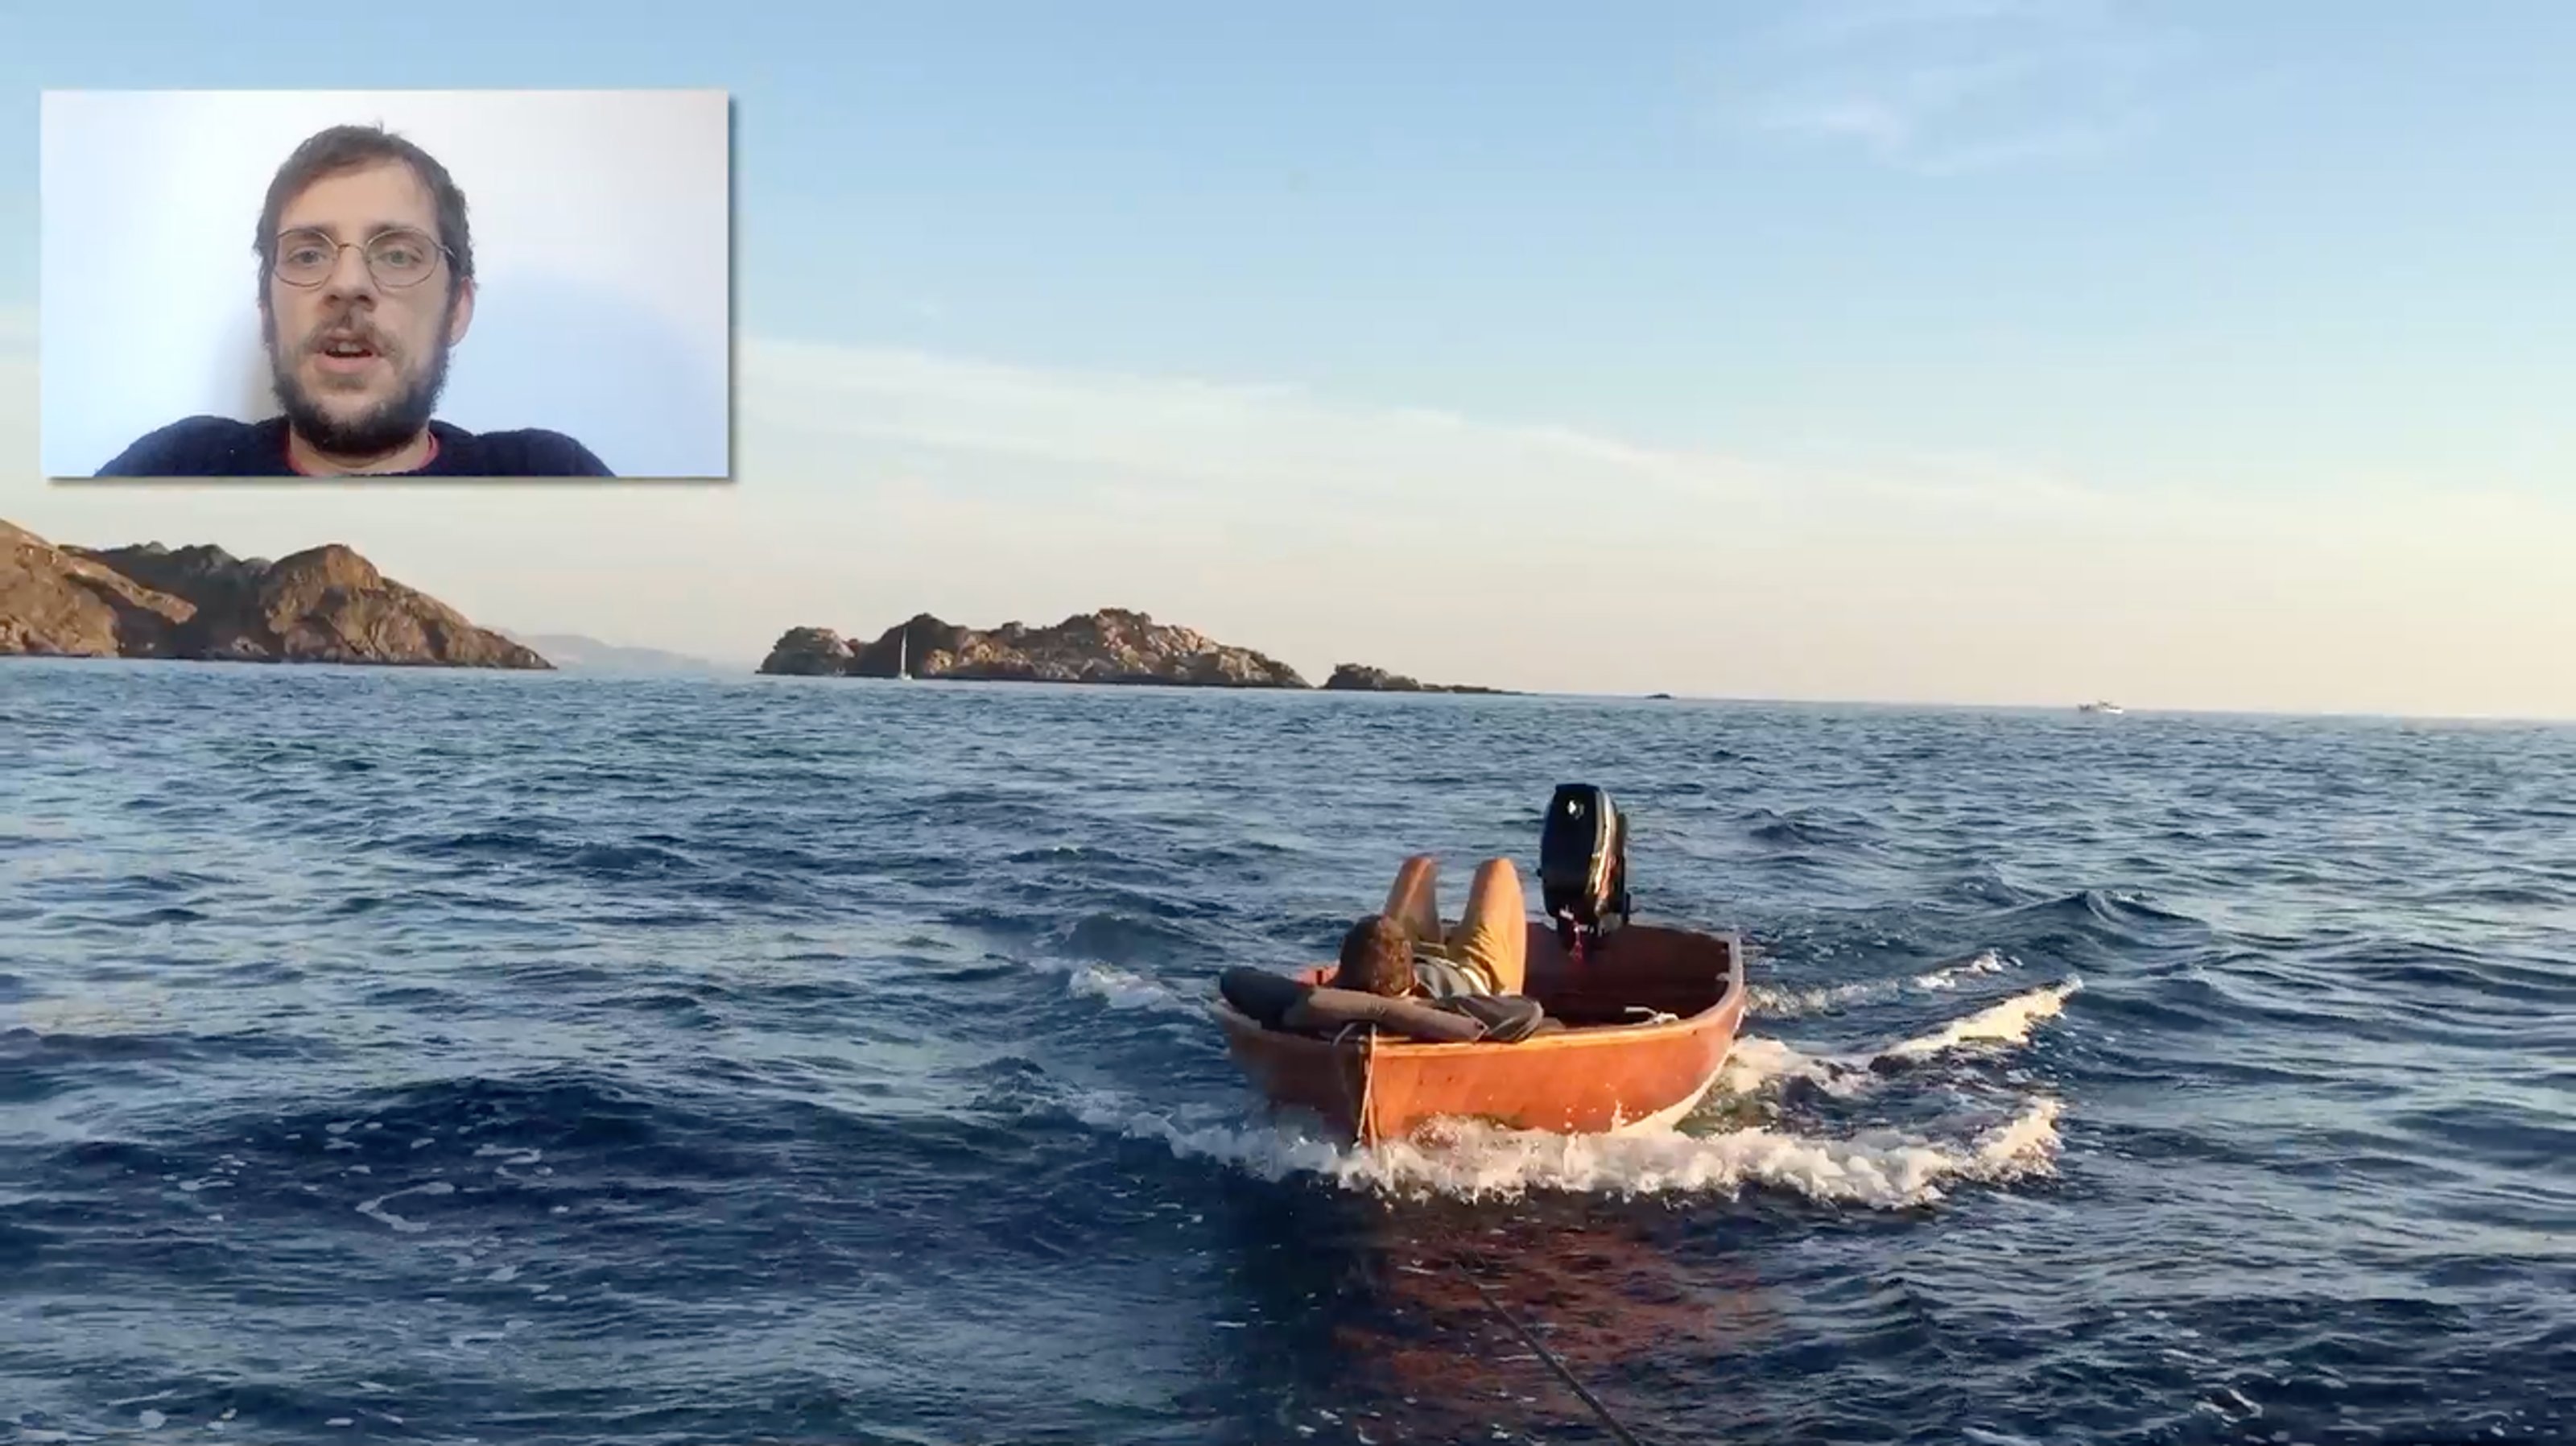 Captura de pantalla del video con el artista explicando el trabajo. En el video se ve un velero con una persona acostada en él.